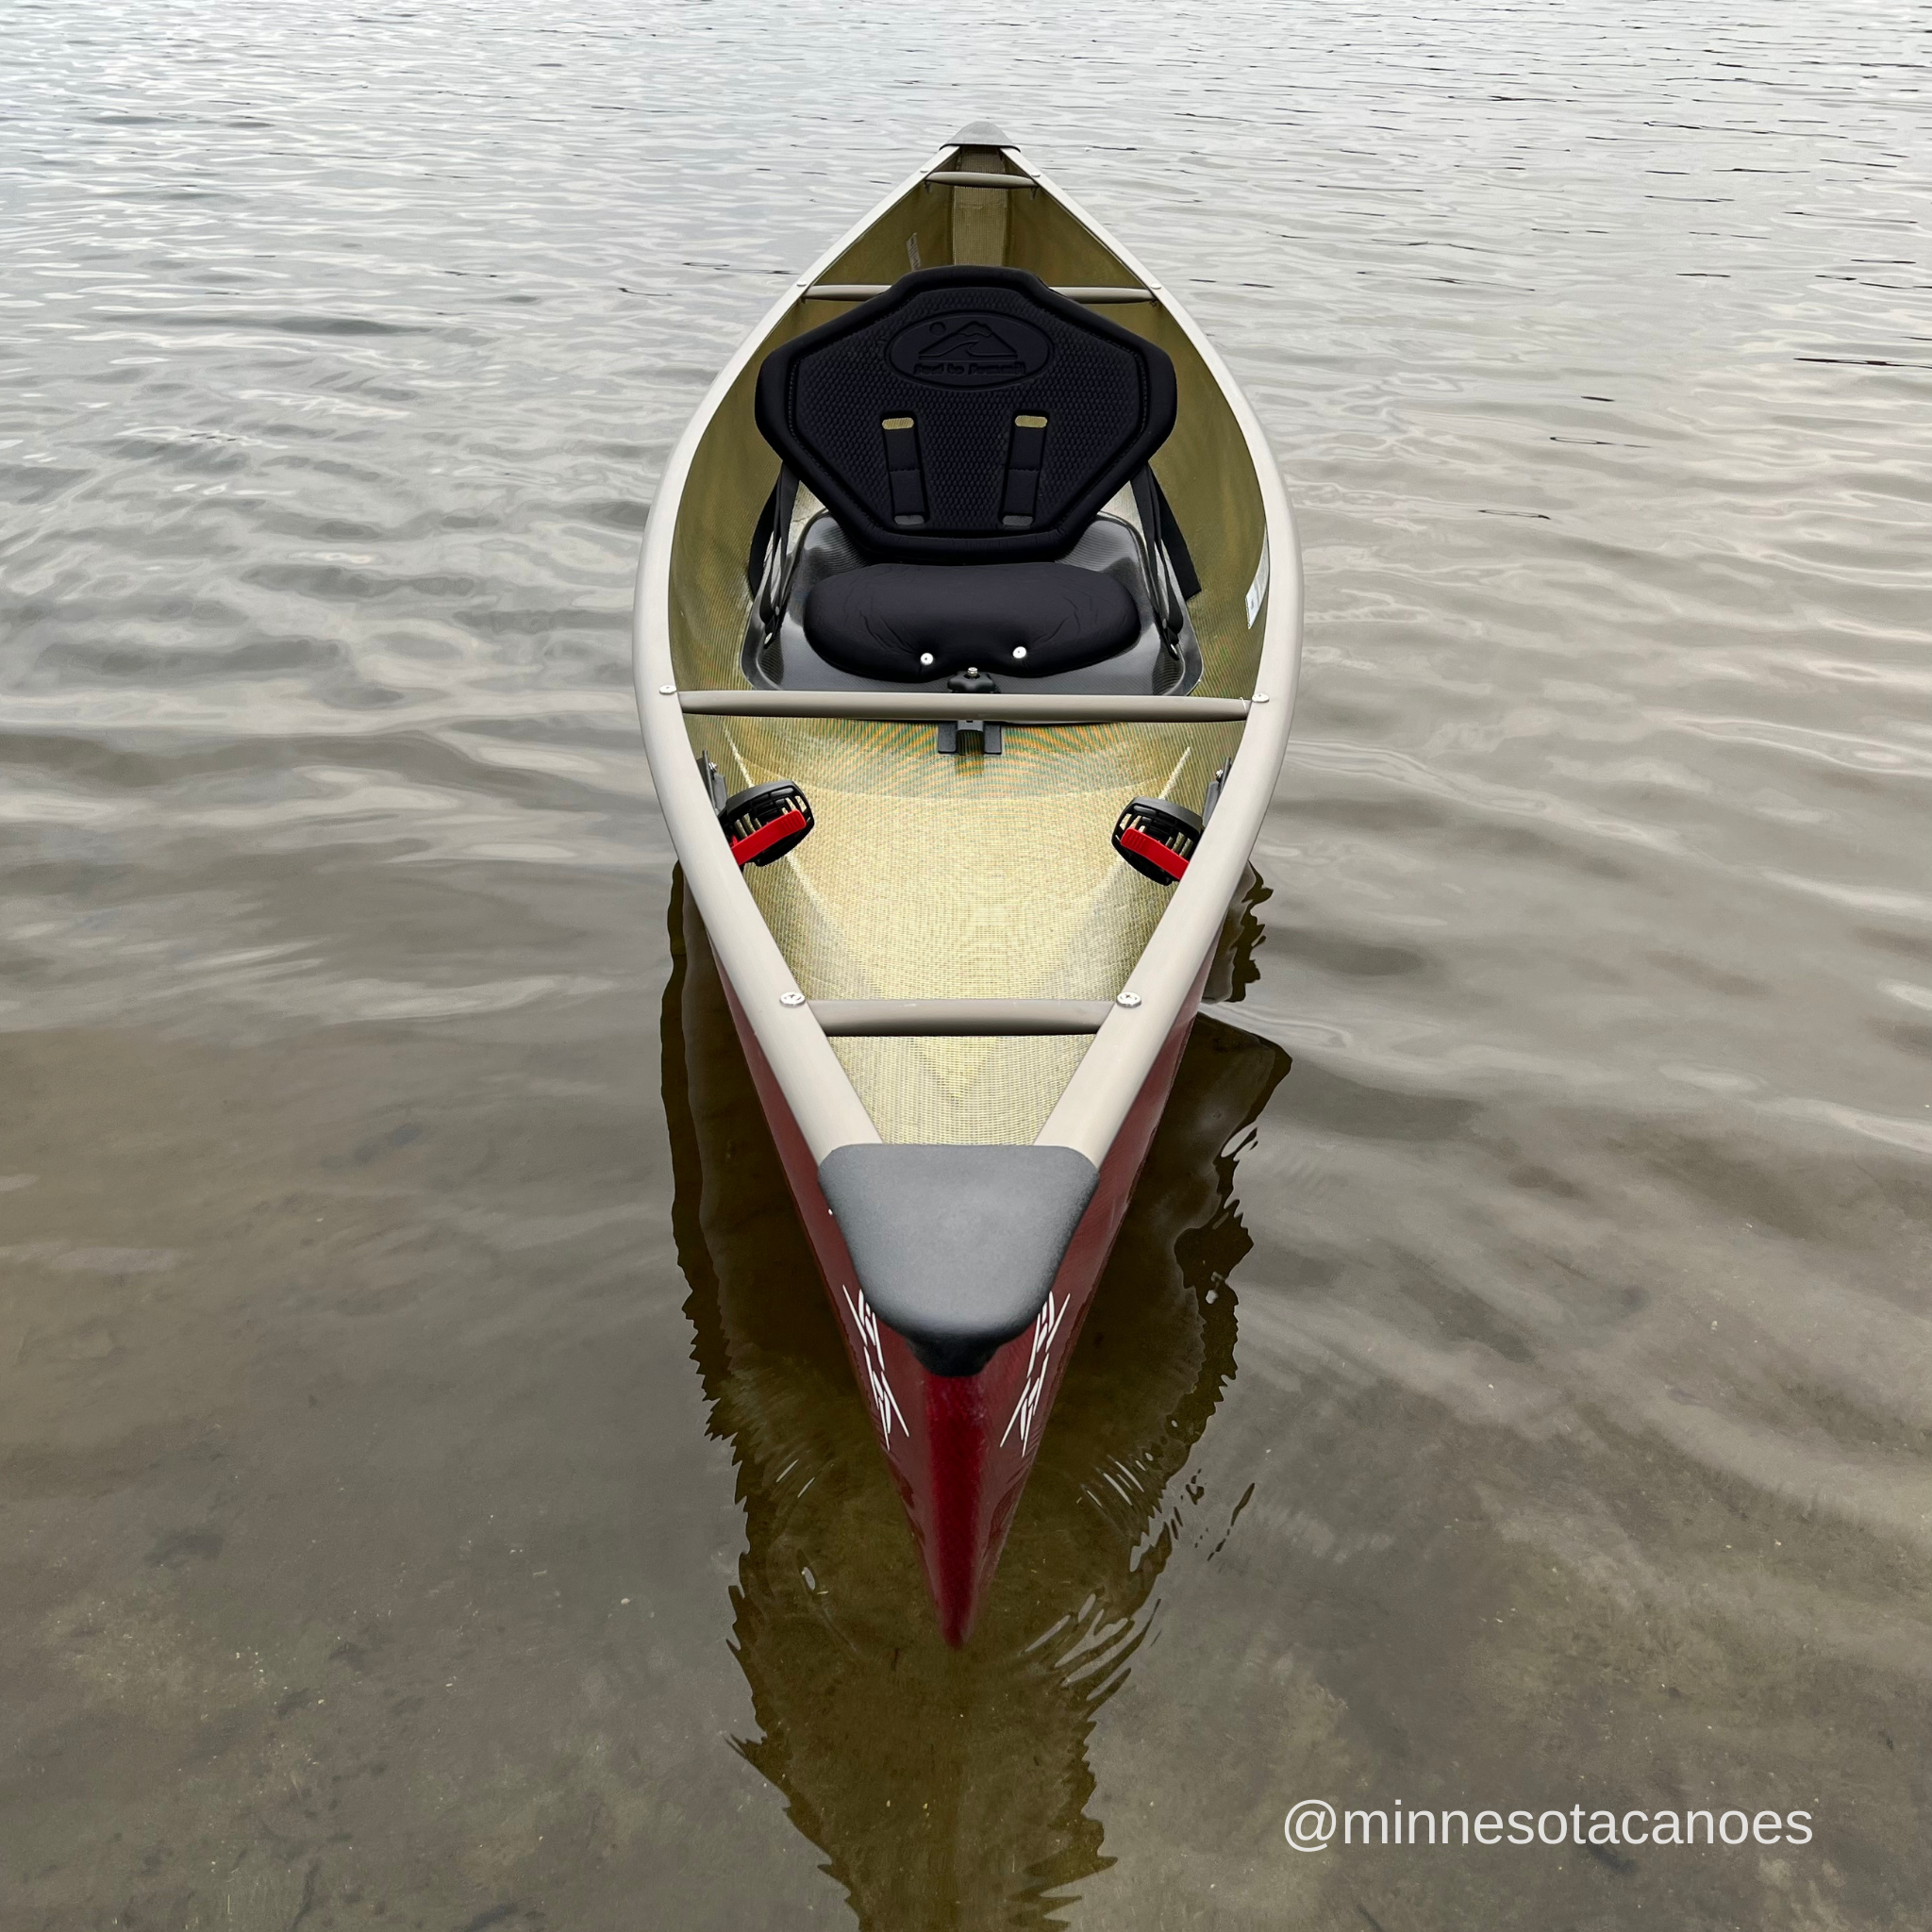 ADK LT (10' 6") Ruby WhiteGold Solo Northstar Canoe